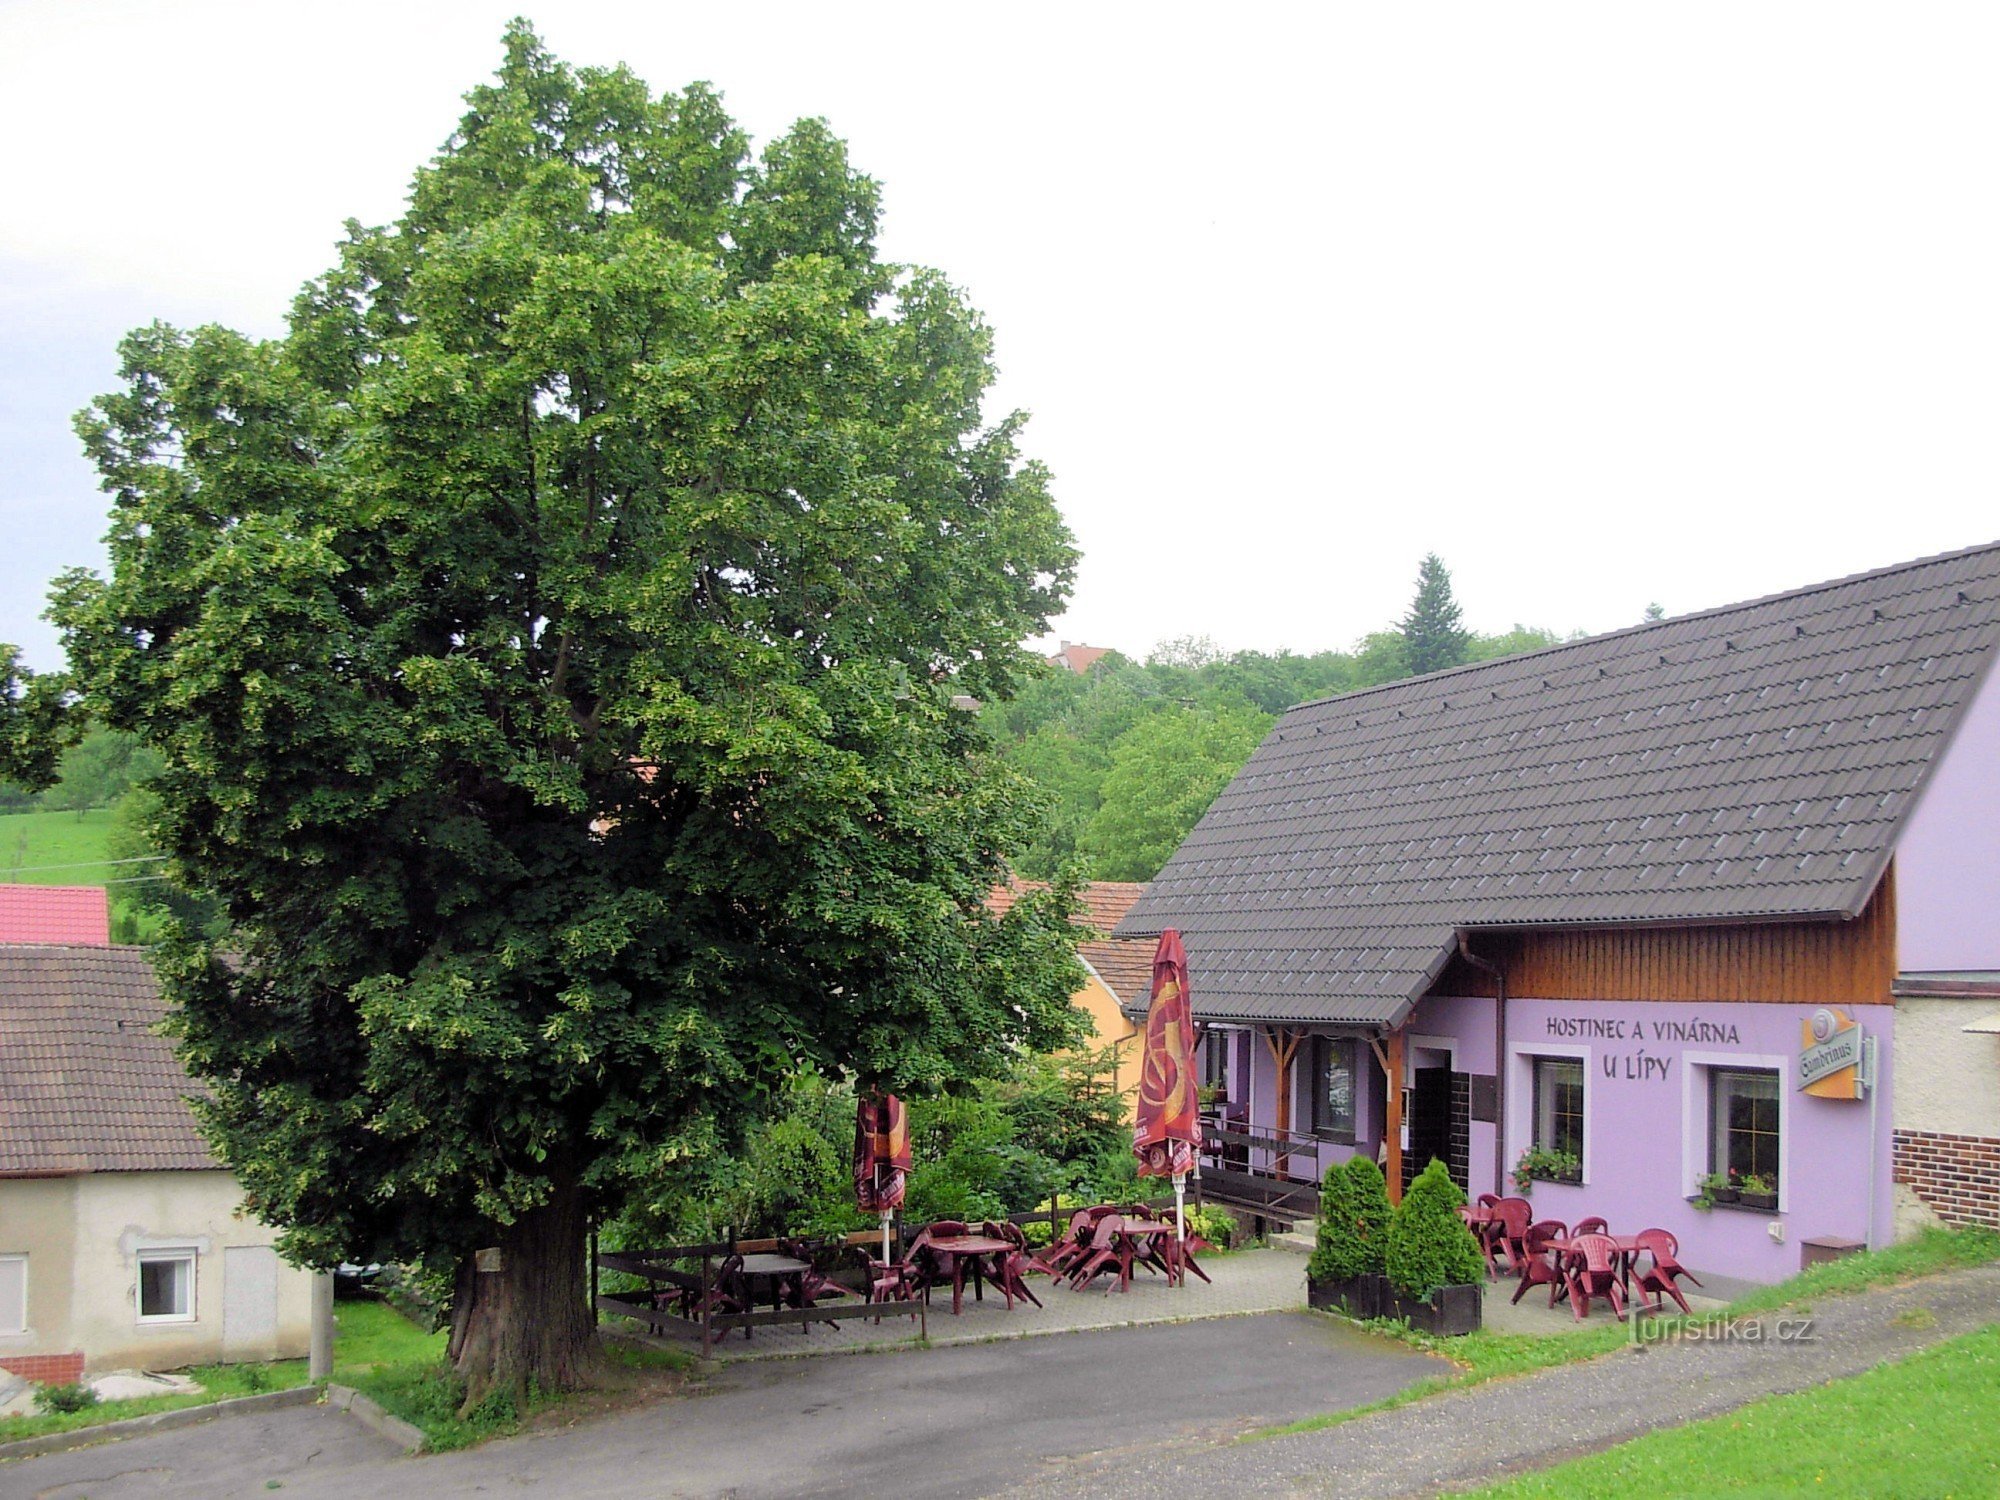 Weingut und Gasthaus U lípy in Březová